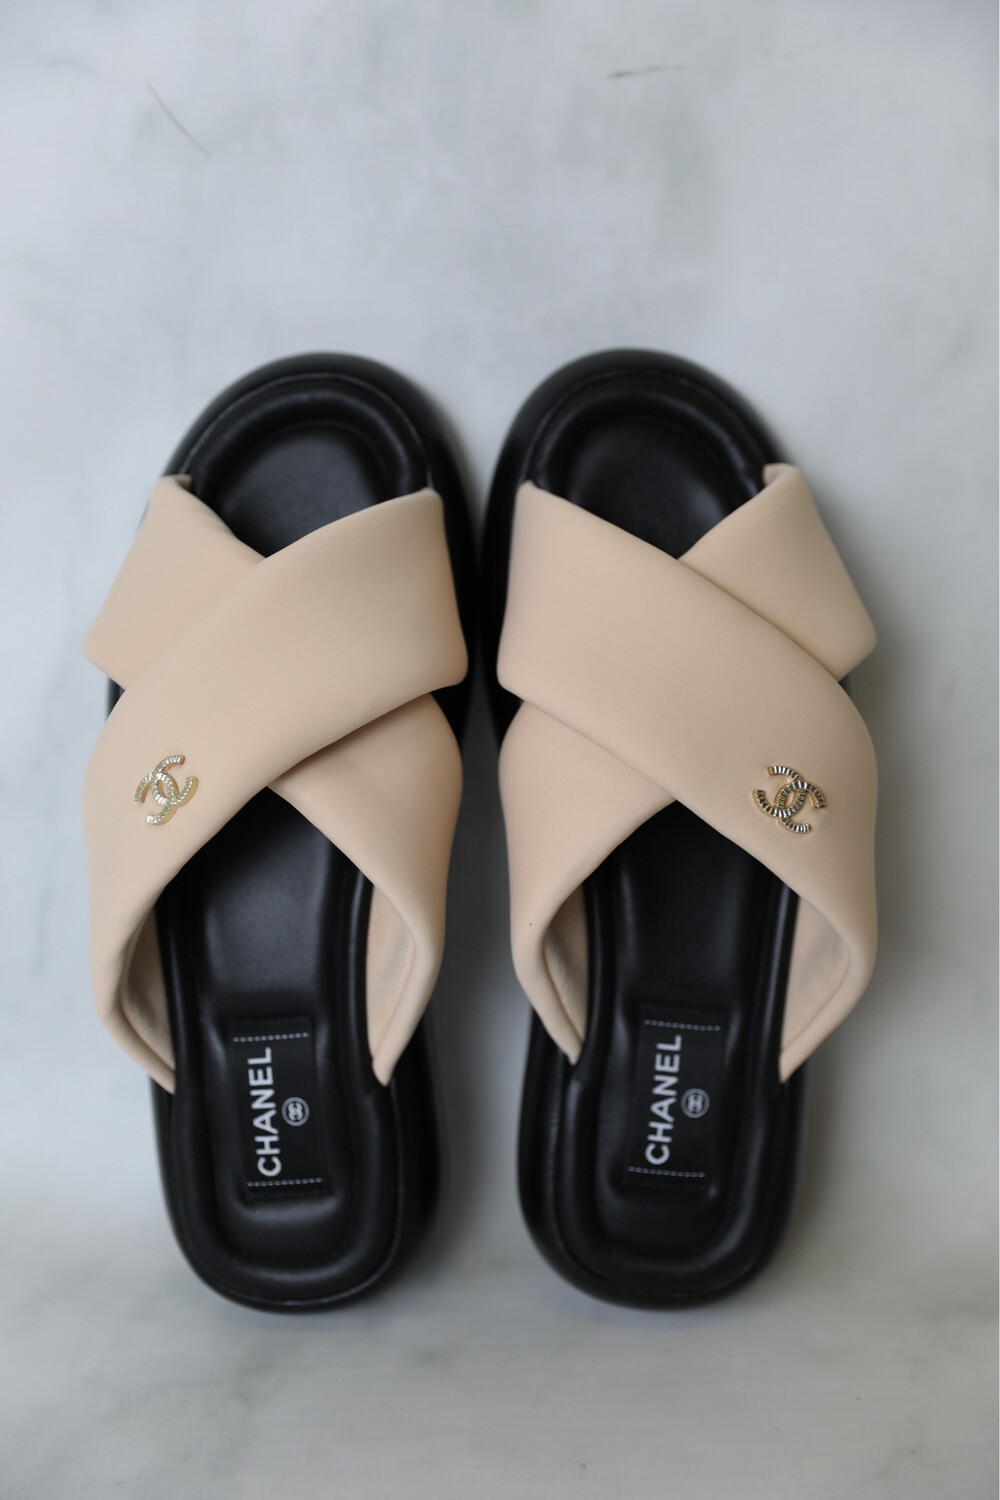 CHANEL, Shoes, Chanel Black Suede Clog Sandal Sz 4